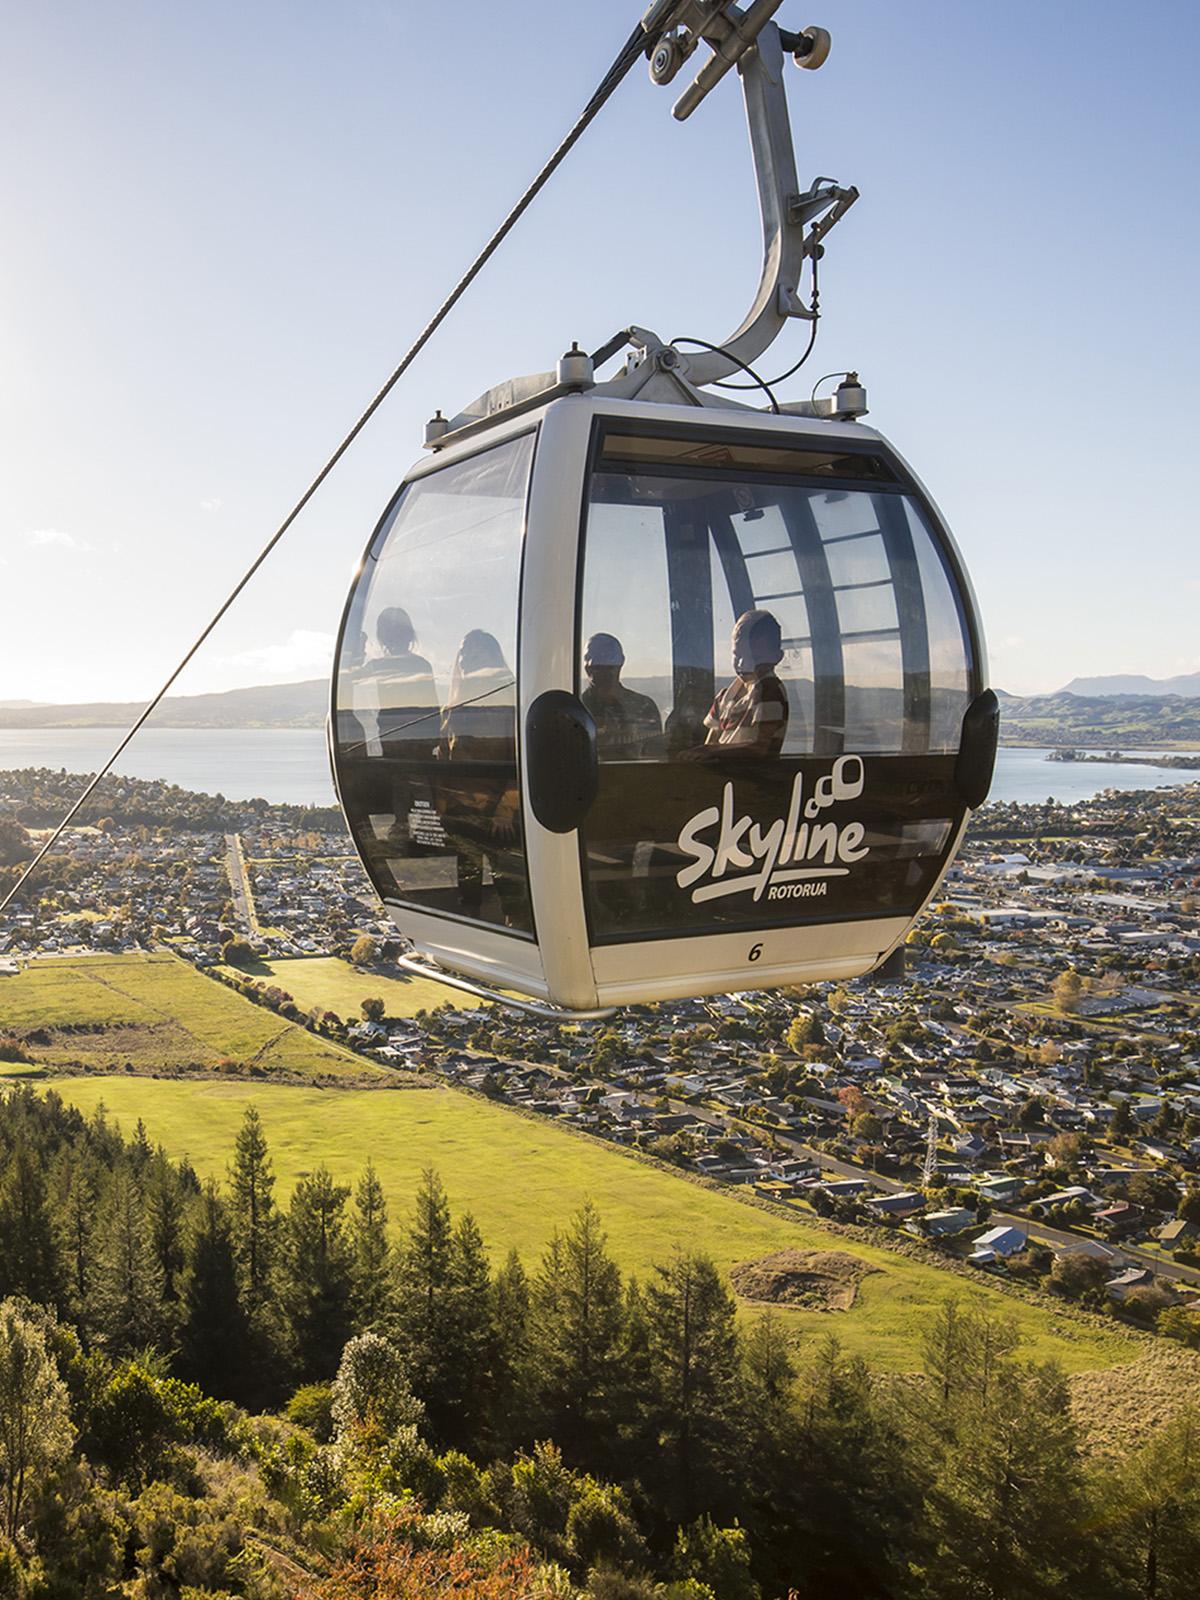 Close up image of the Rotorua Gondola